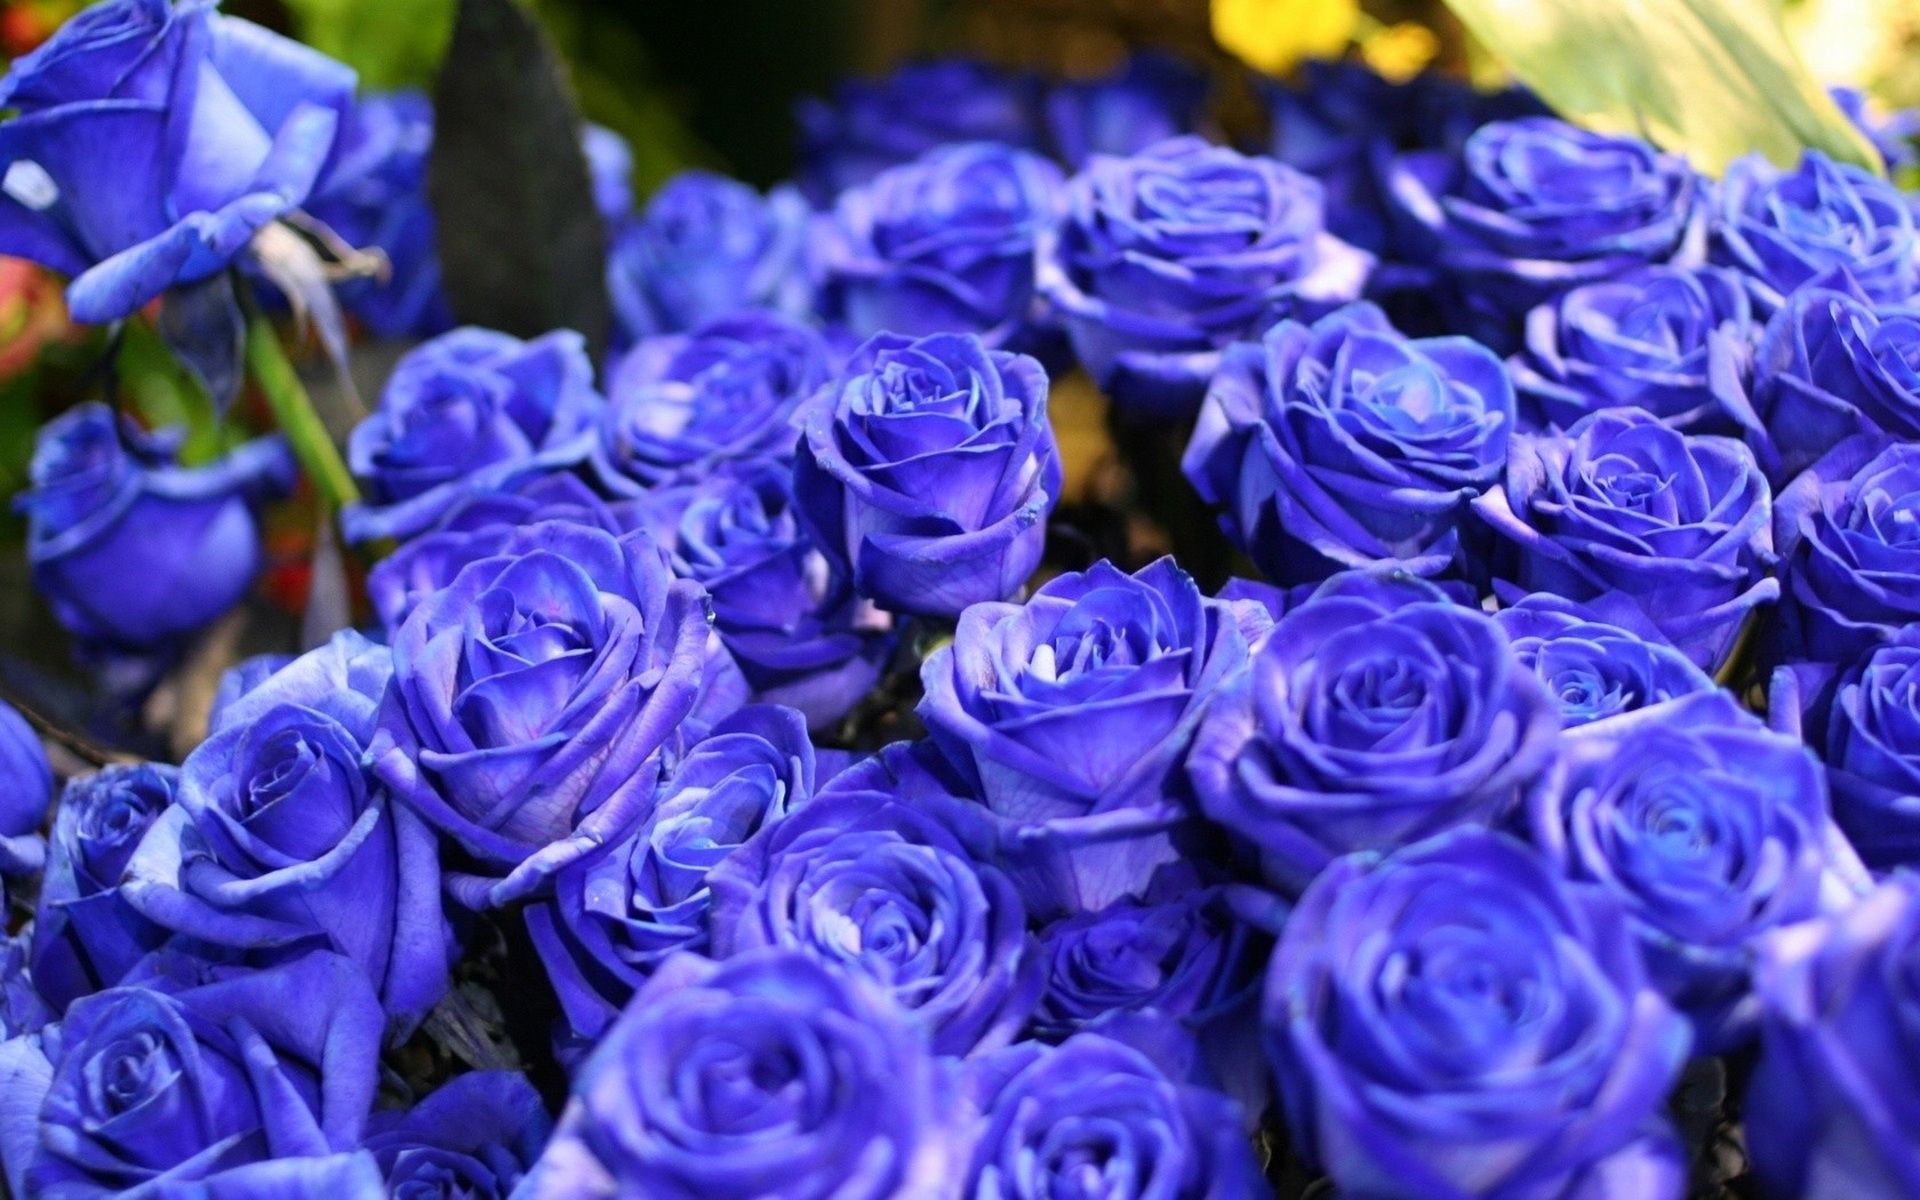 蓝色妖姬图片 蓝玫瑰是蓝色妖姬吗？ - 【可爱点】